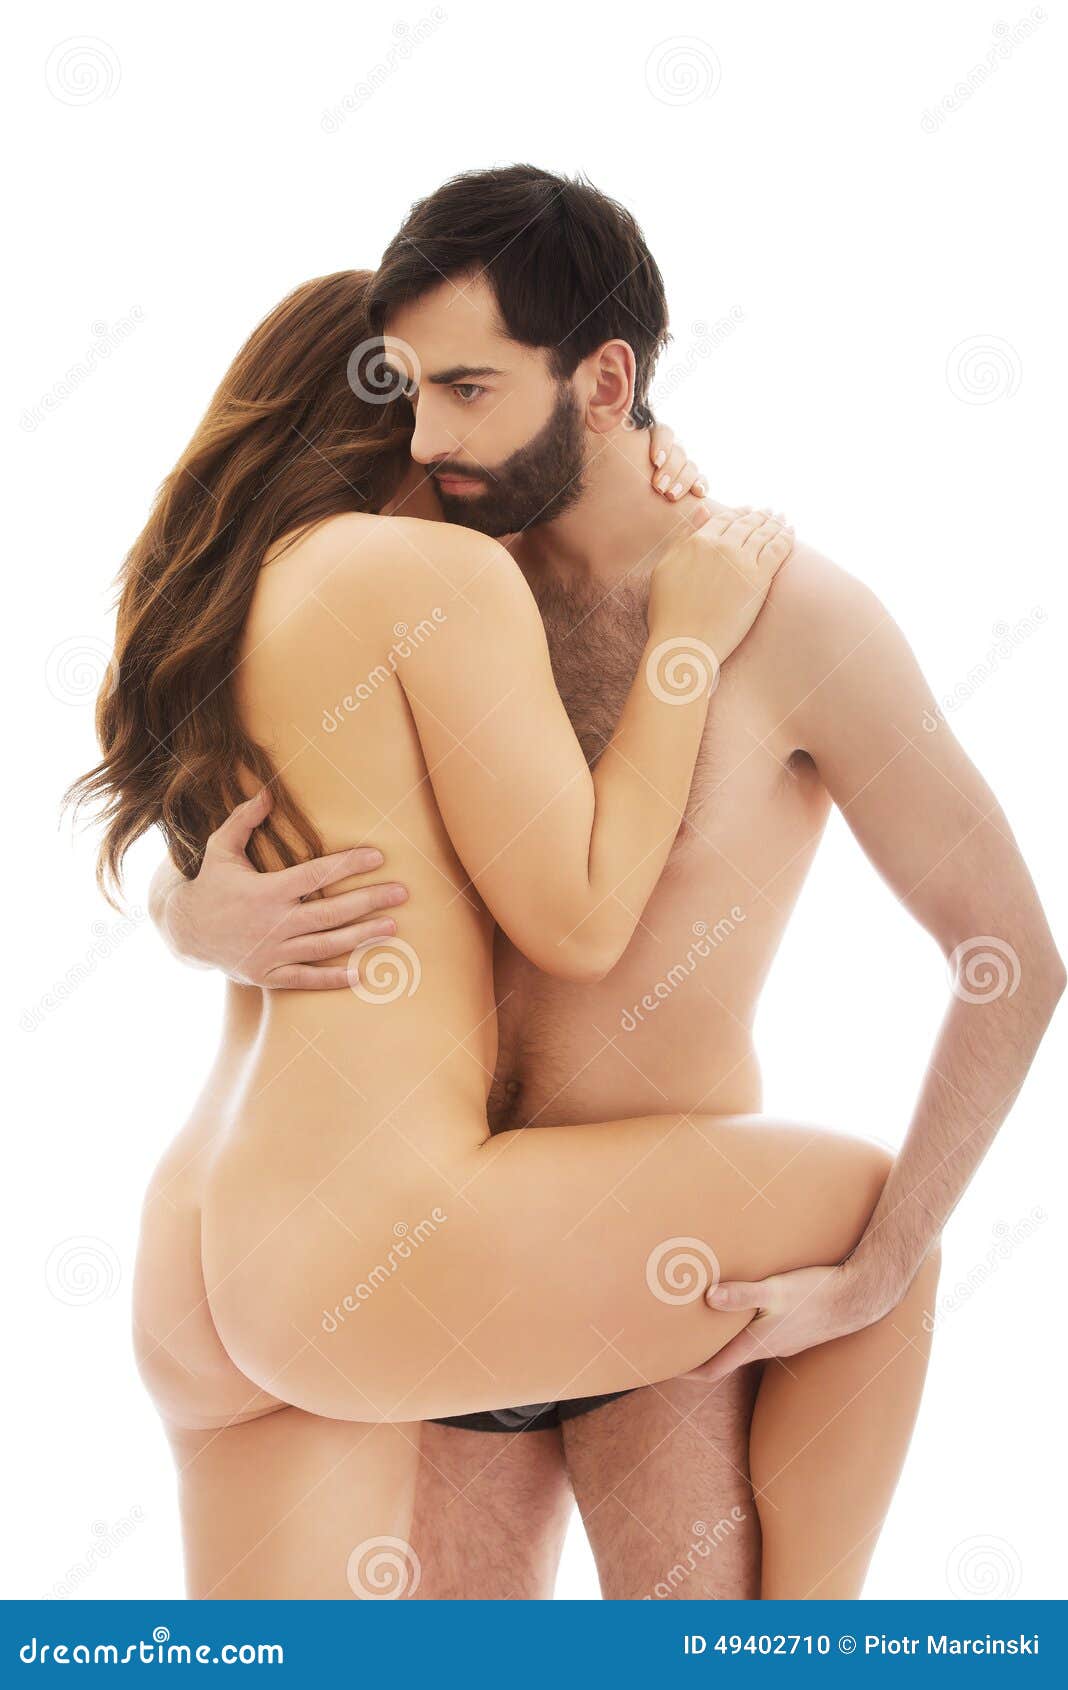 Nude photos men women